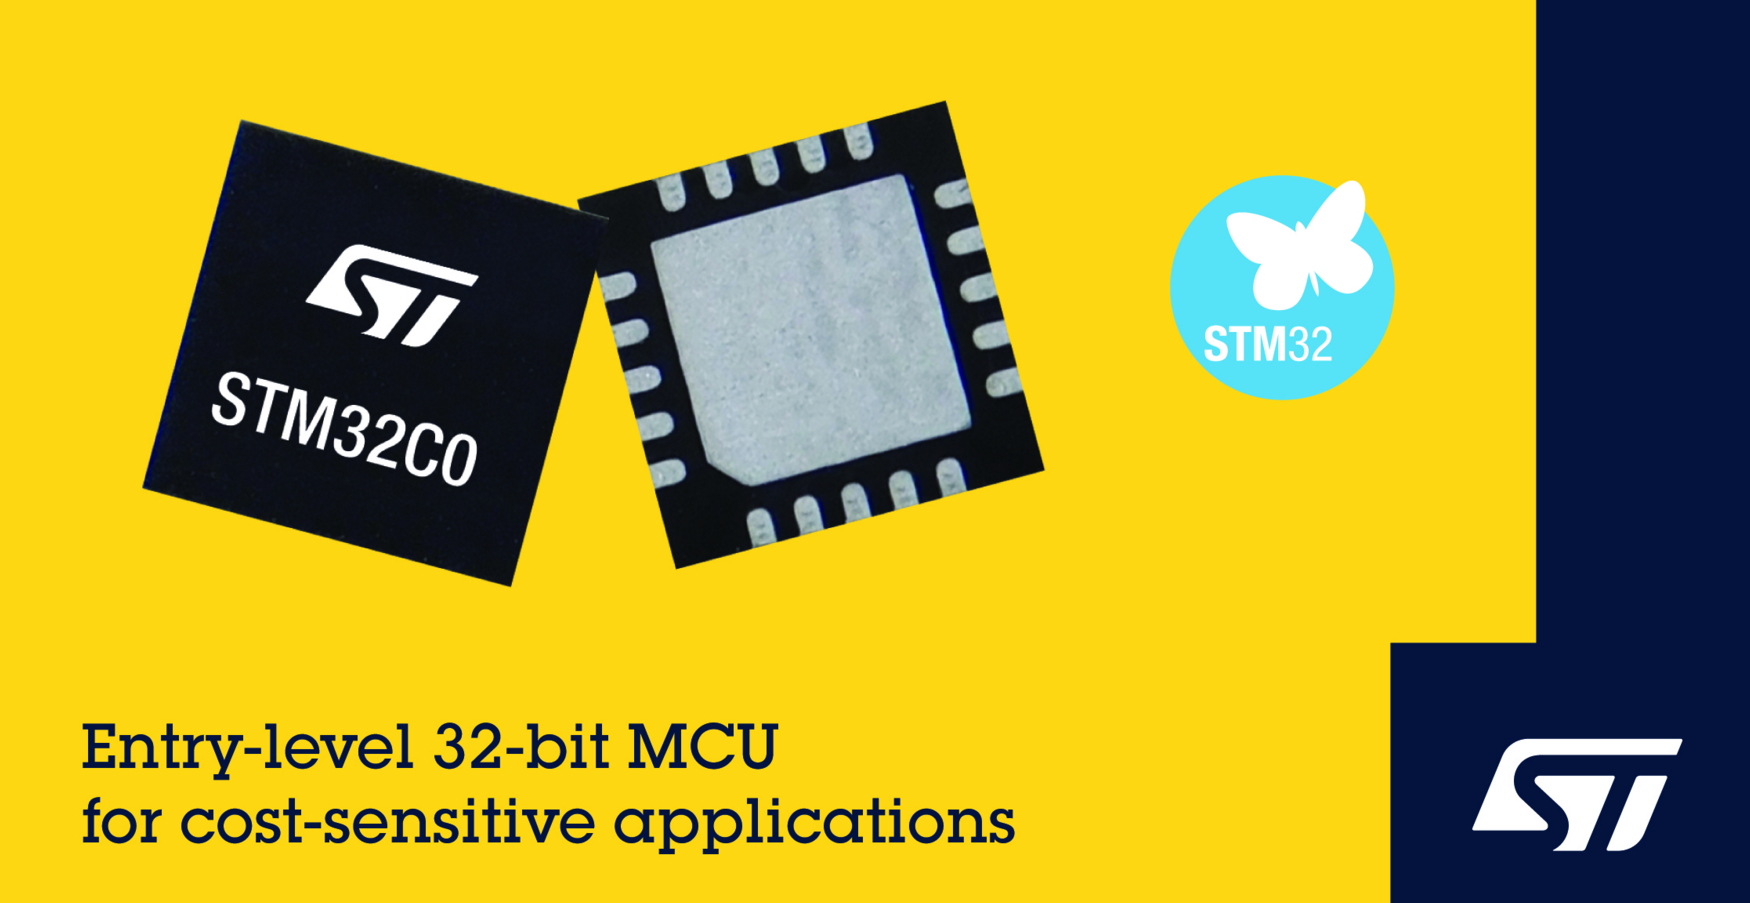 意法半導體發布STM32C0系列MCU 讓成本敏感的8位應用也能享受32 位性能